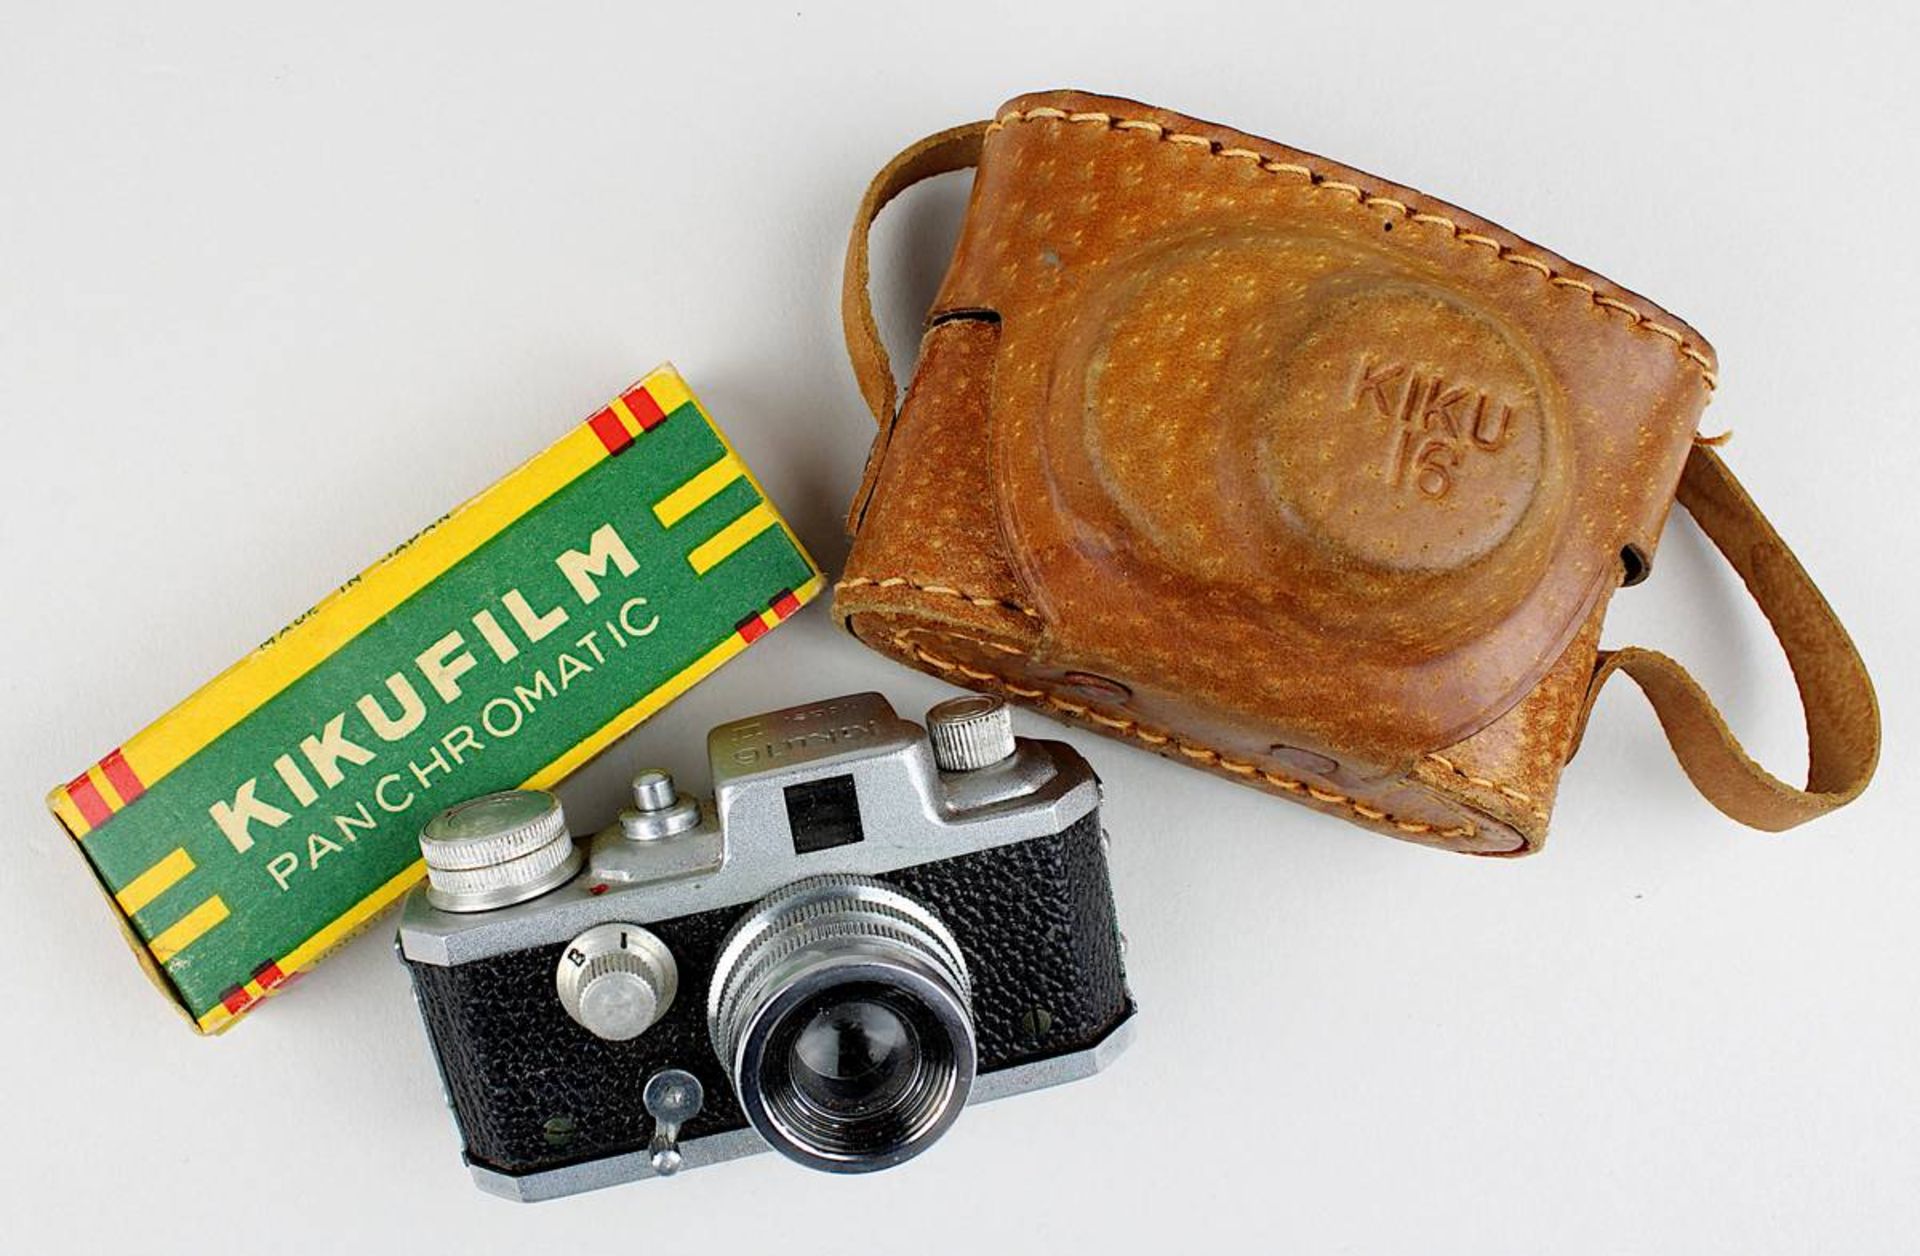 Kamera Kiku 16, Modell II, Japan 1950er Jahre, im originalen Lederetui, Fokus 25 mm, Blende B und I,